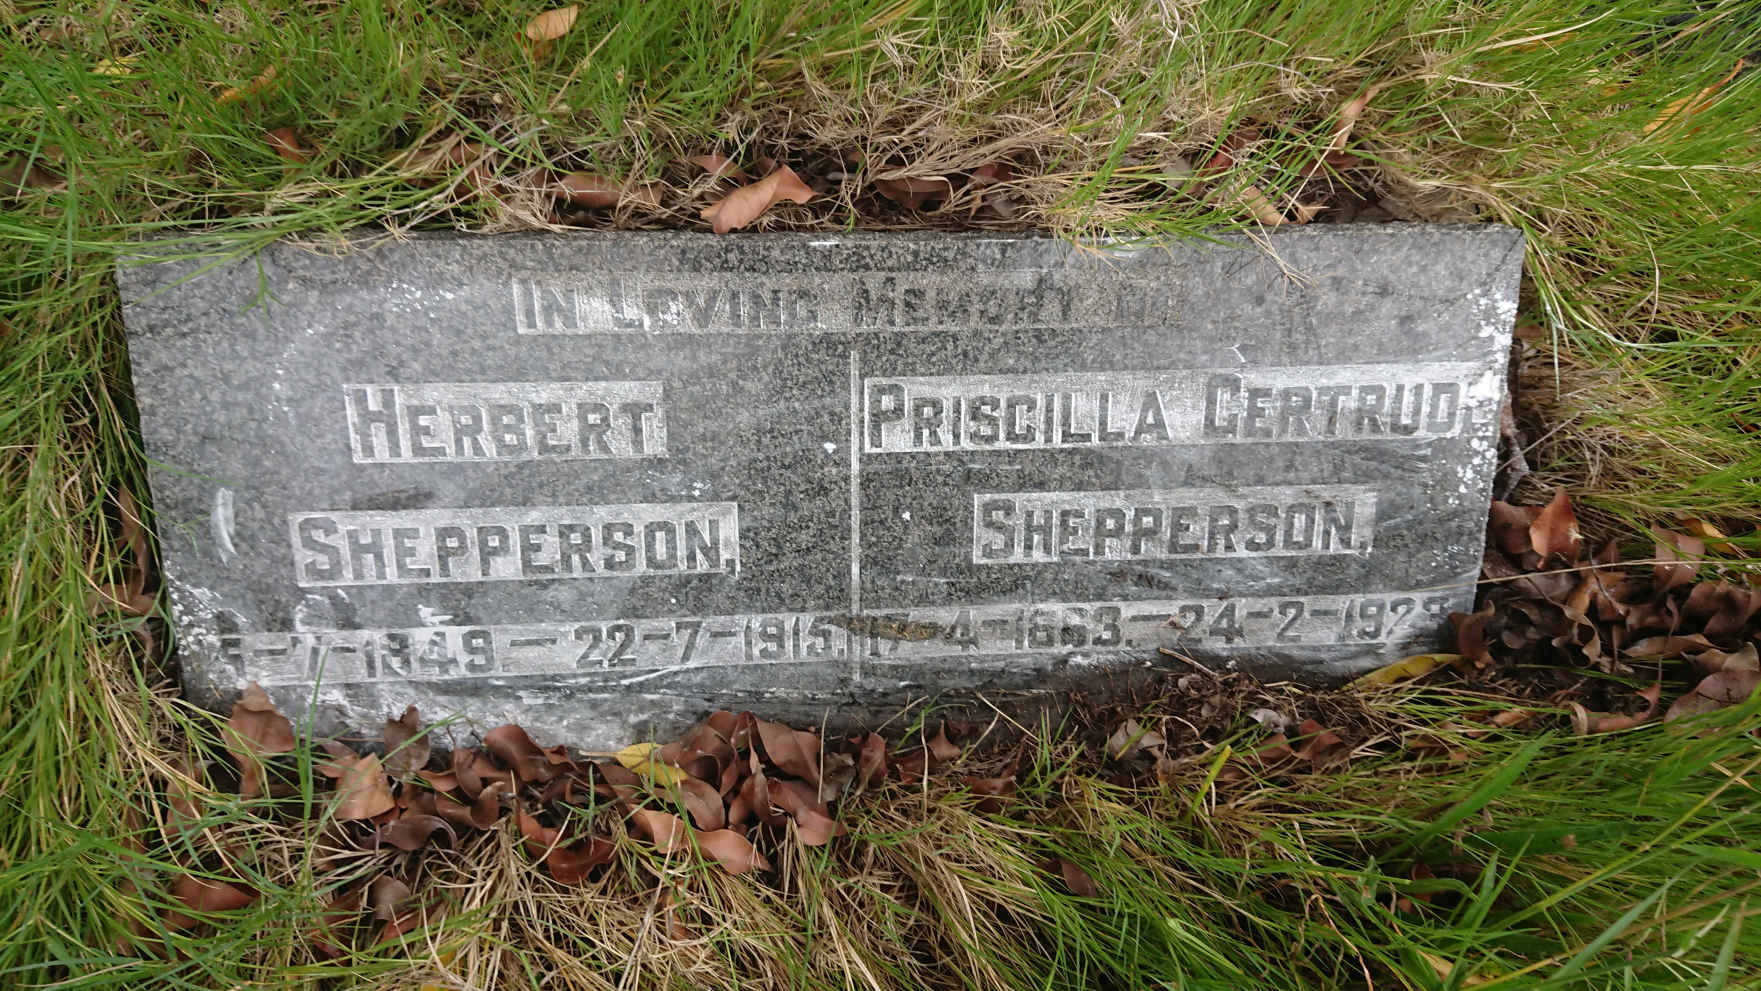 SHEPPERSON Herbert 1849-1915 & Priscilla Gertrude 1863-1923